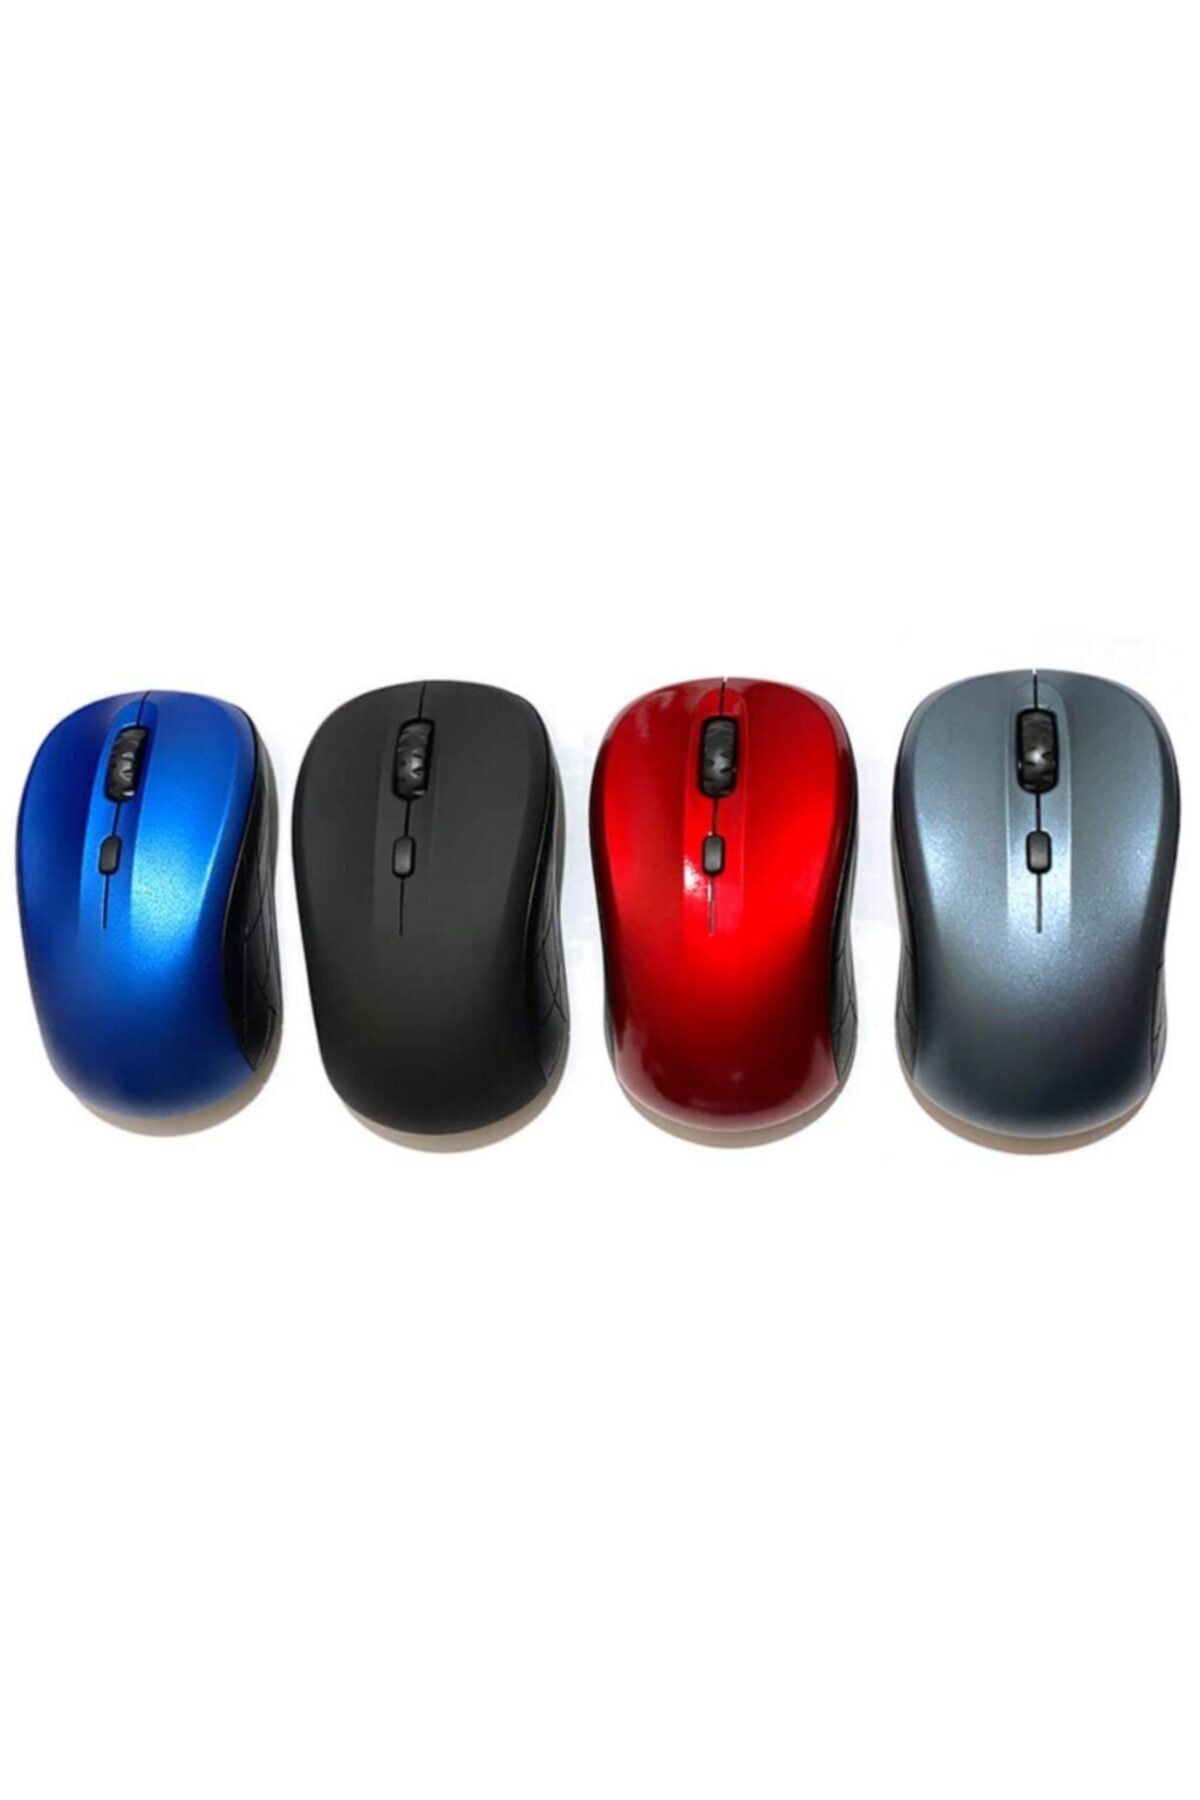 WOZLO Kablosuz Optik Mouse - Wireless Mouse - Maus - Fare